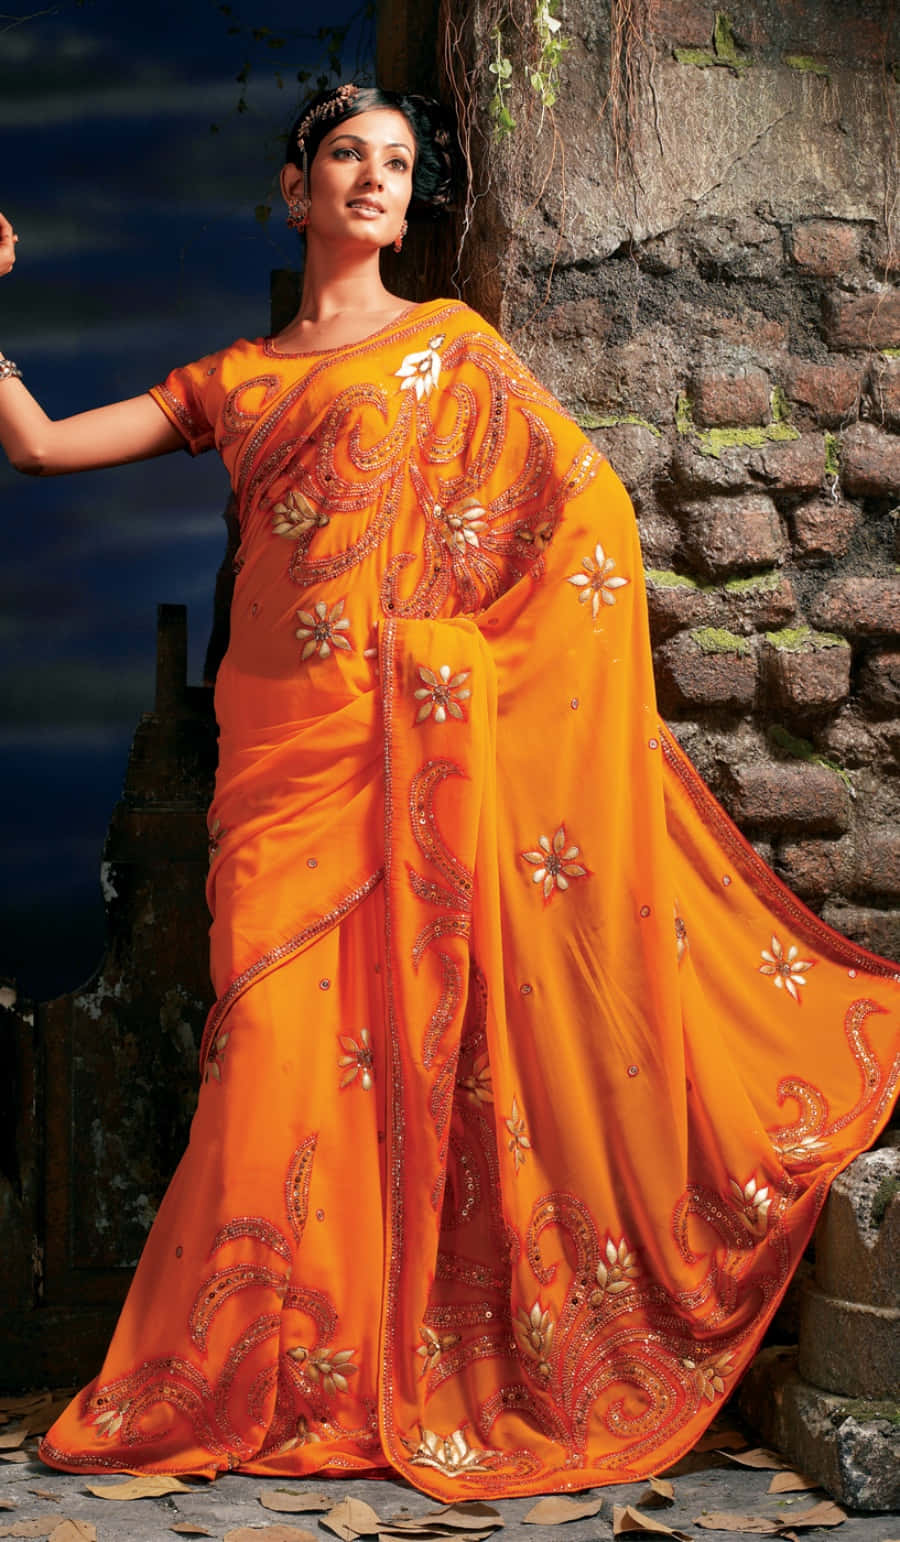 A Woman In An Orange Sari